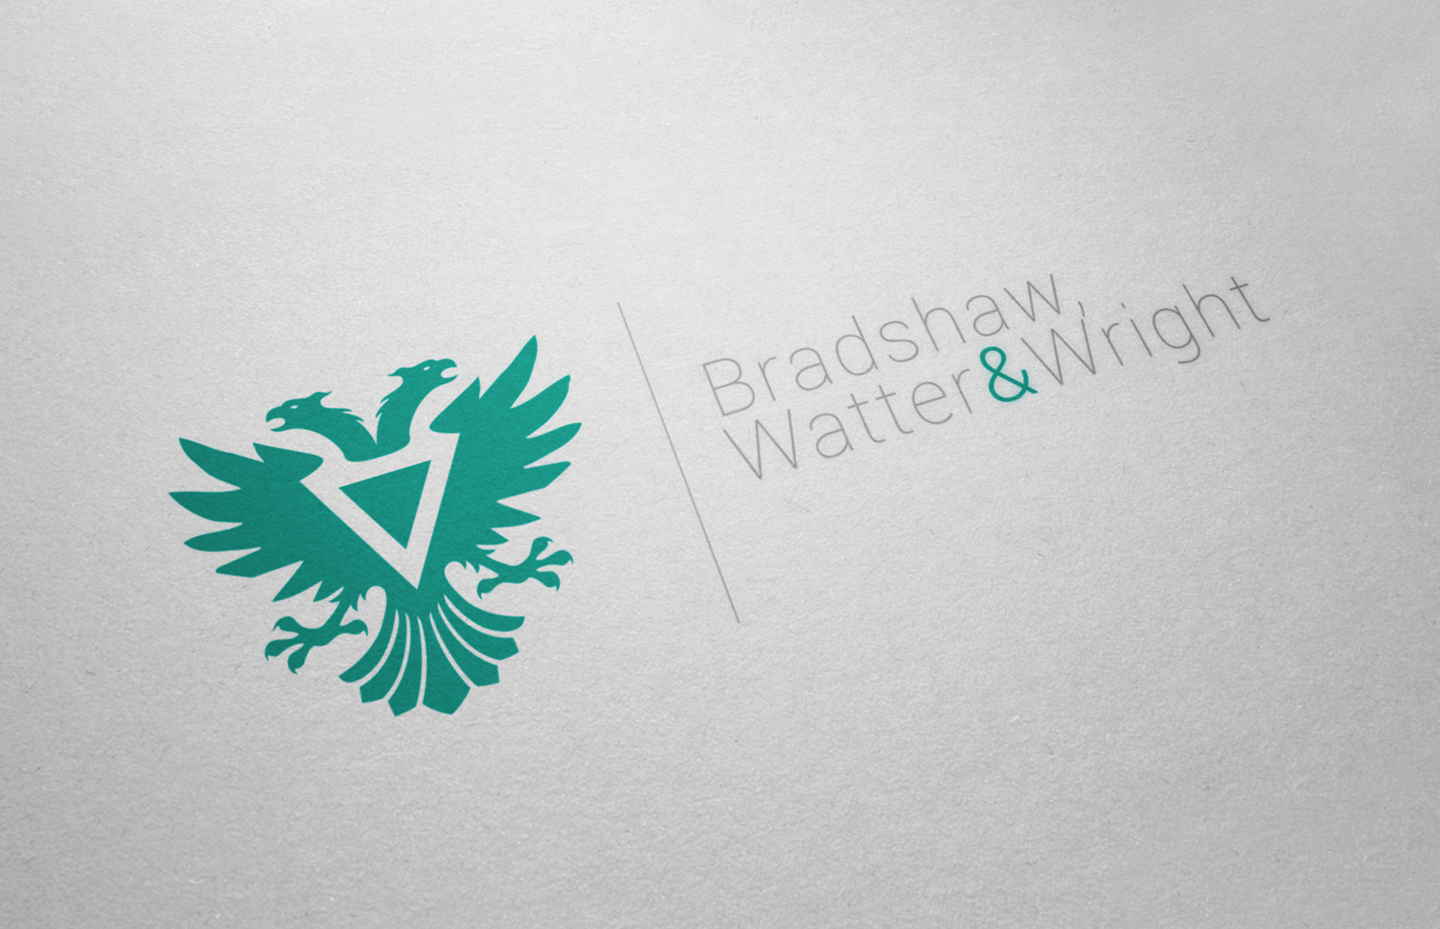 Bradshaw, Watter & Wright logo